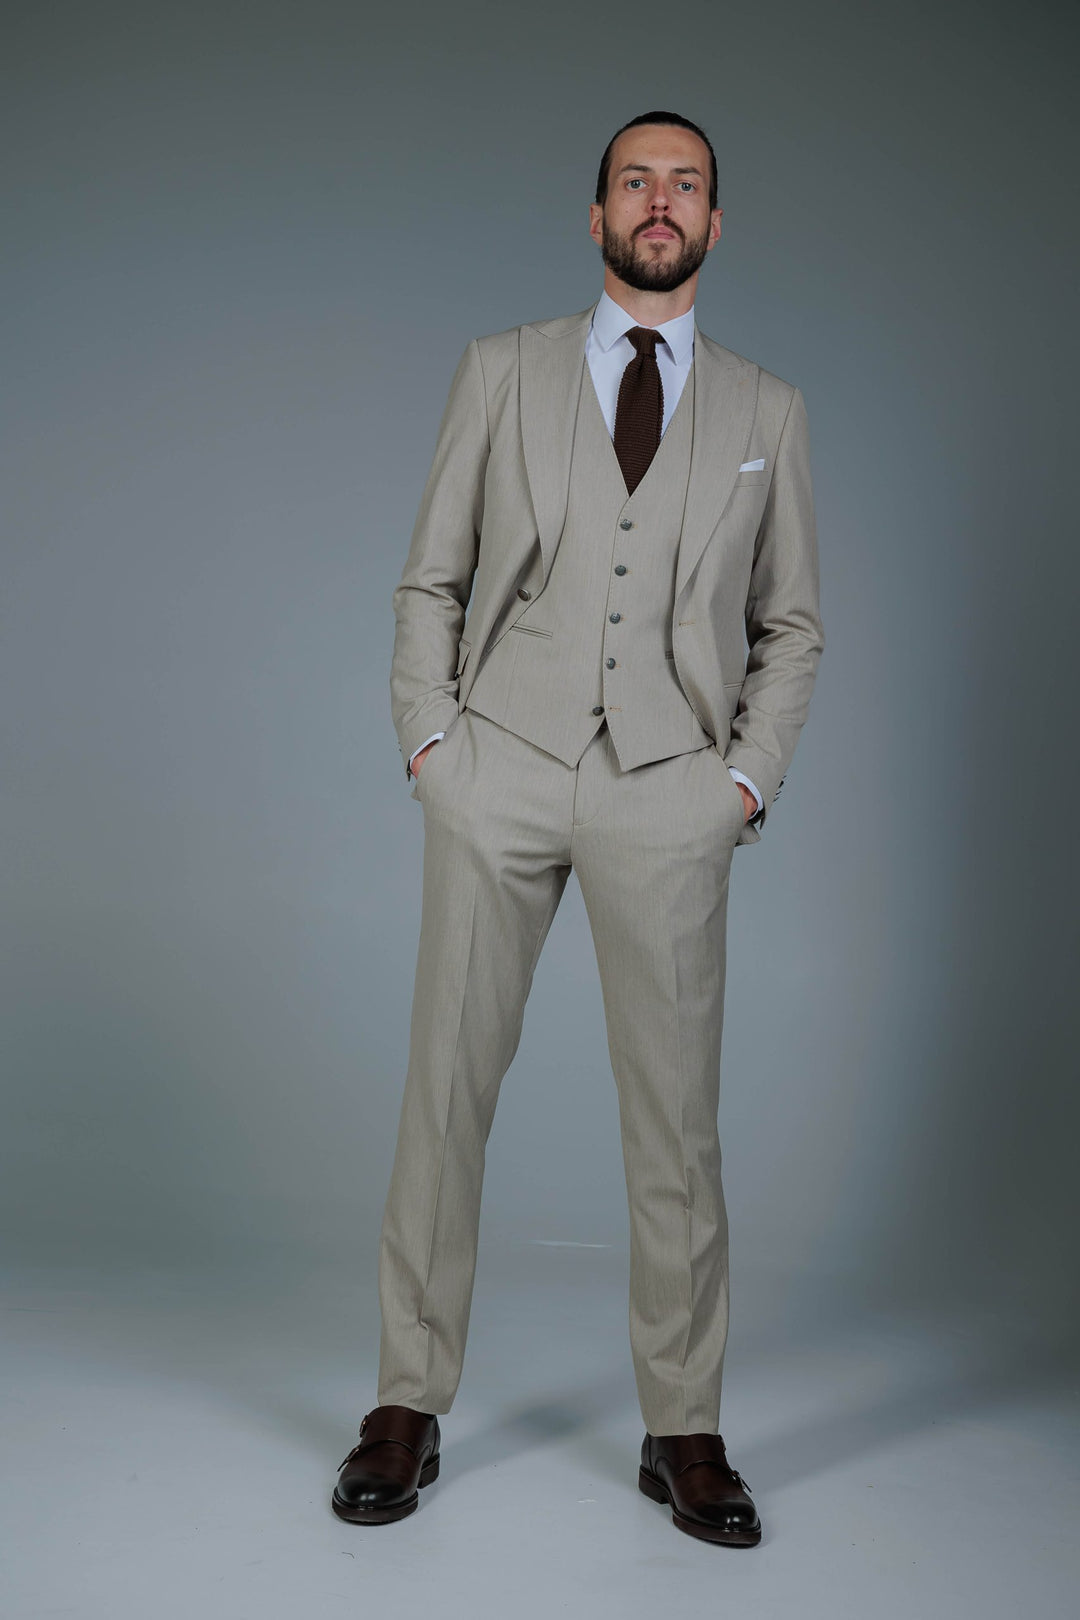 Three-piece suit in cream color